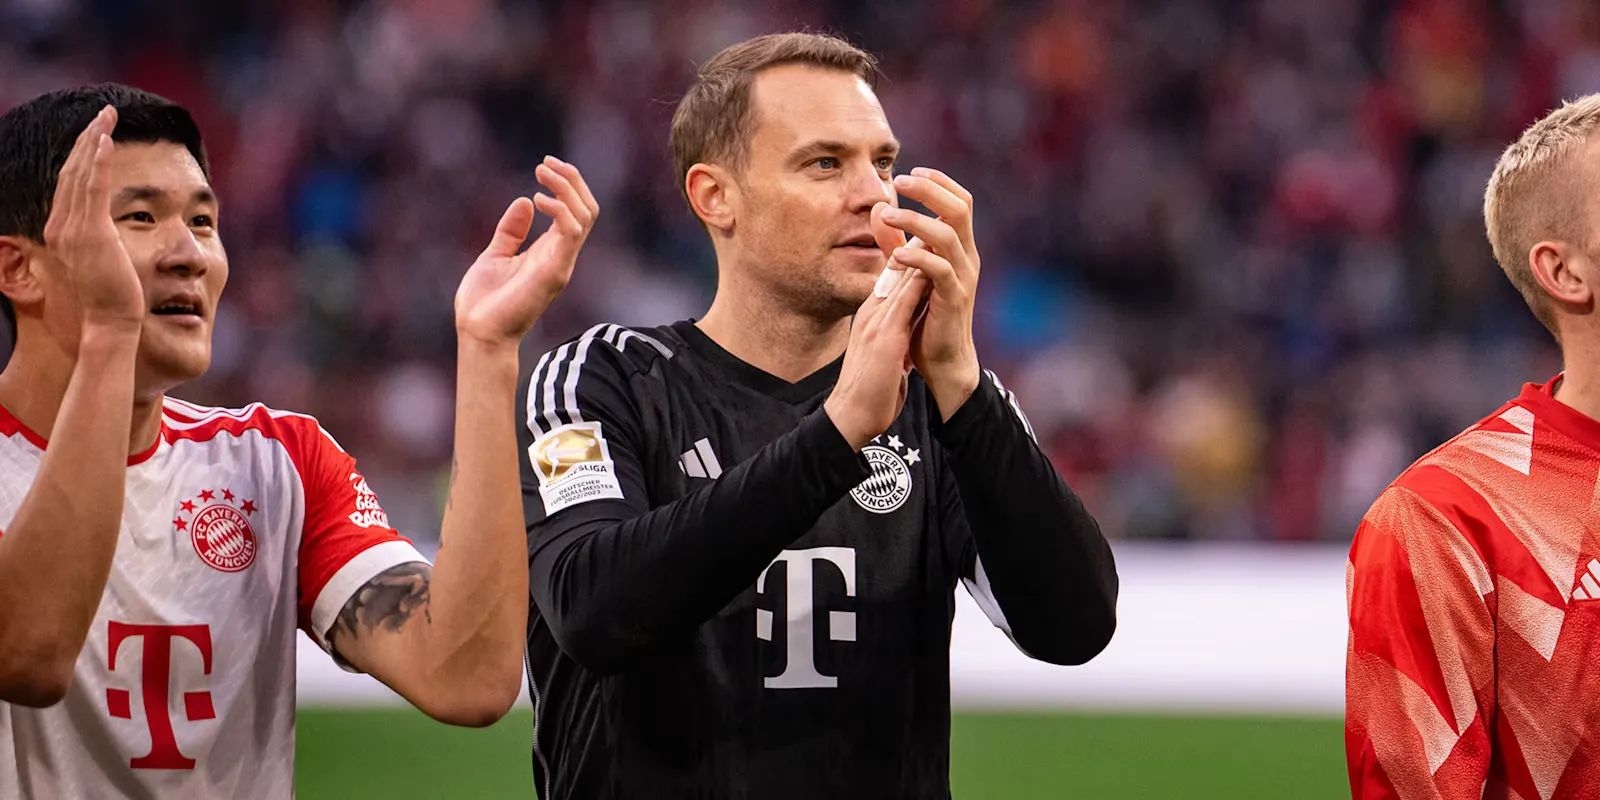 Il Bayern dilaga, ma Neuer rientra e sbaglia maglia: il caso